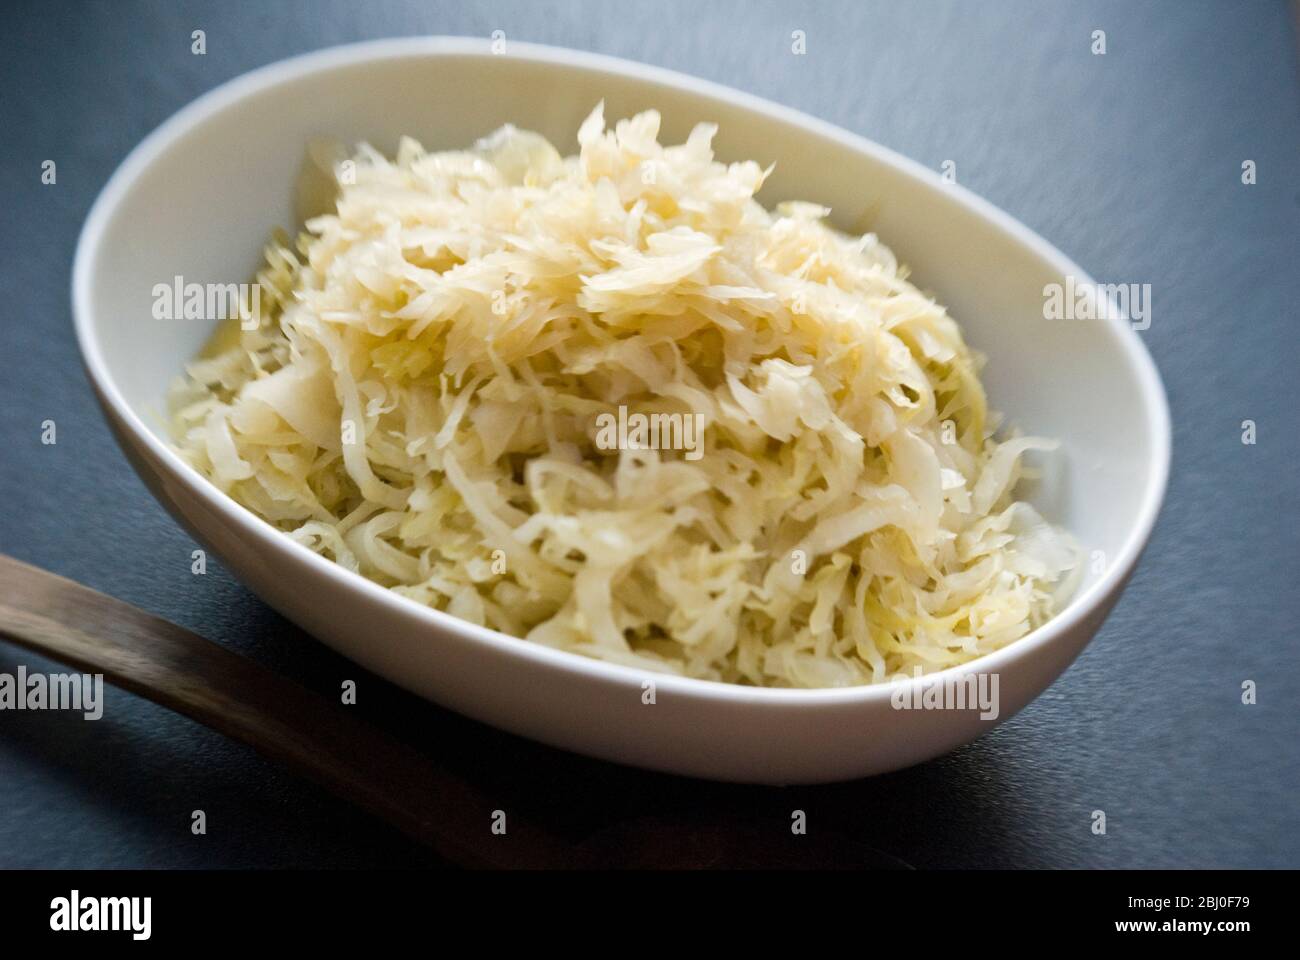 Kleines weißes Gericht aus deutschem Sauerkraut. - Stockfoto